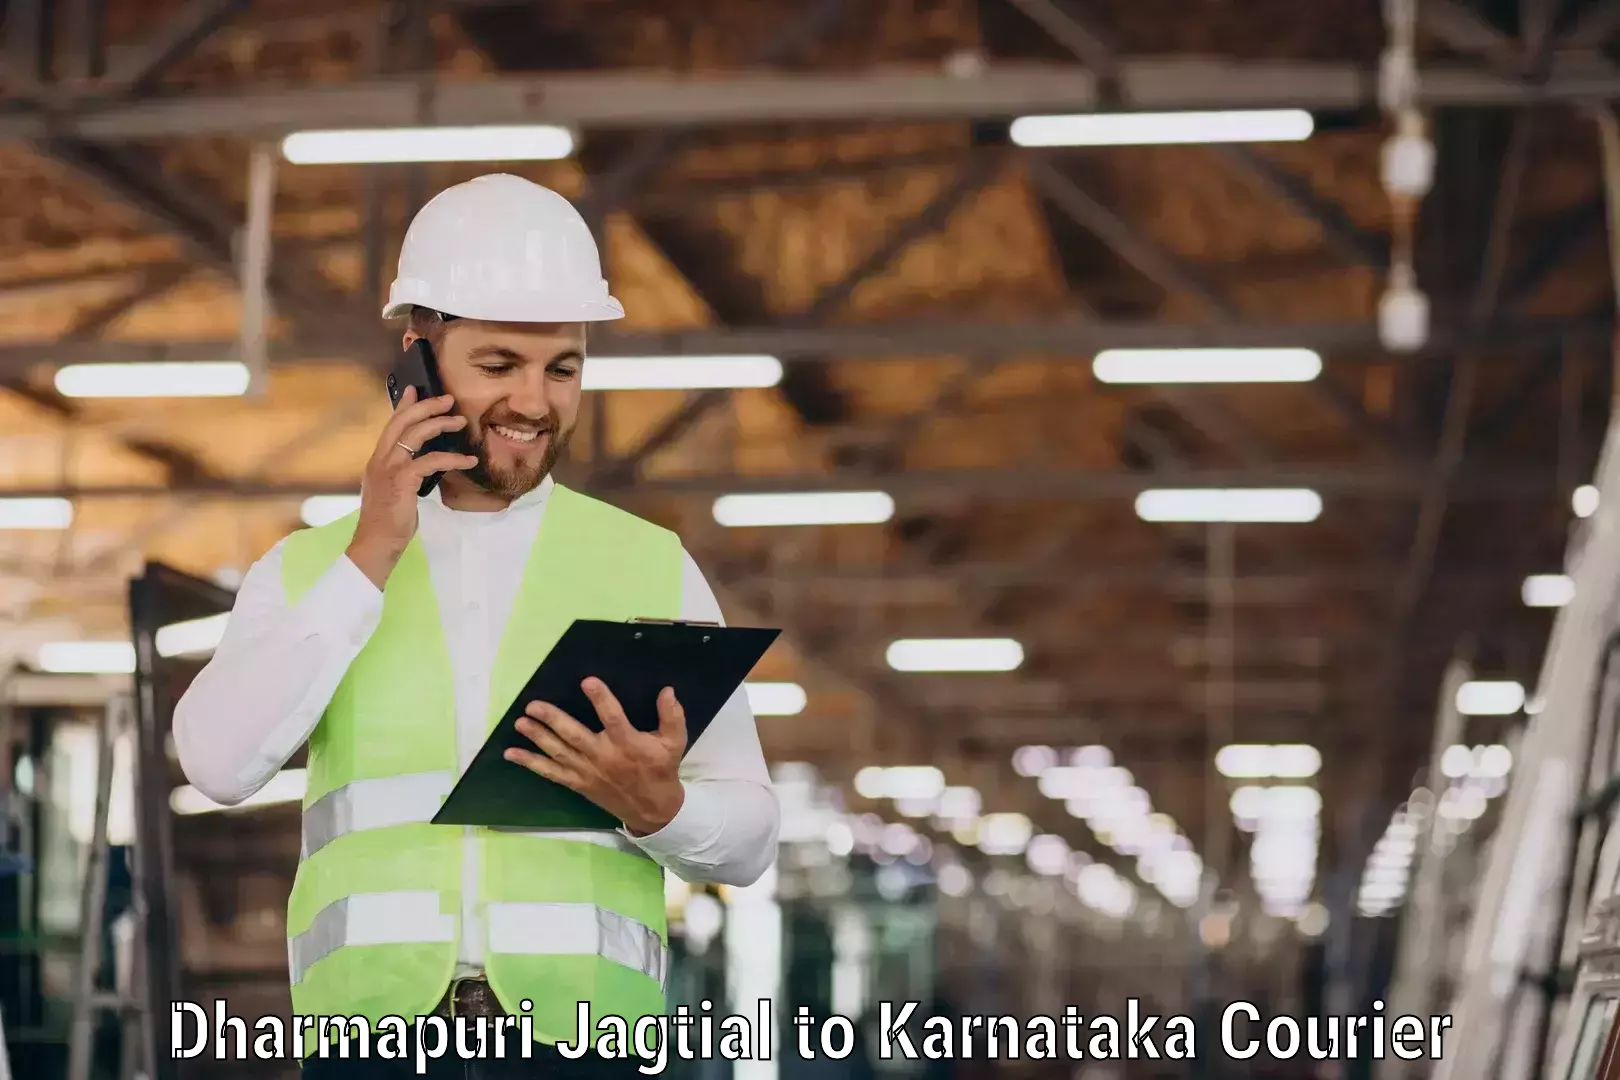 Cost-effective freight solutions Dharmapuri Jagtial to Karwar